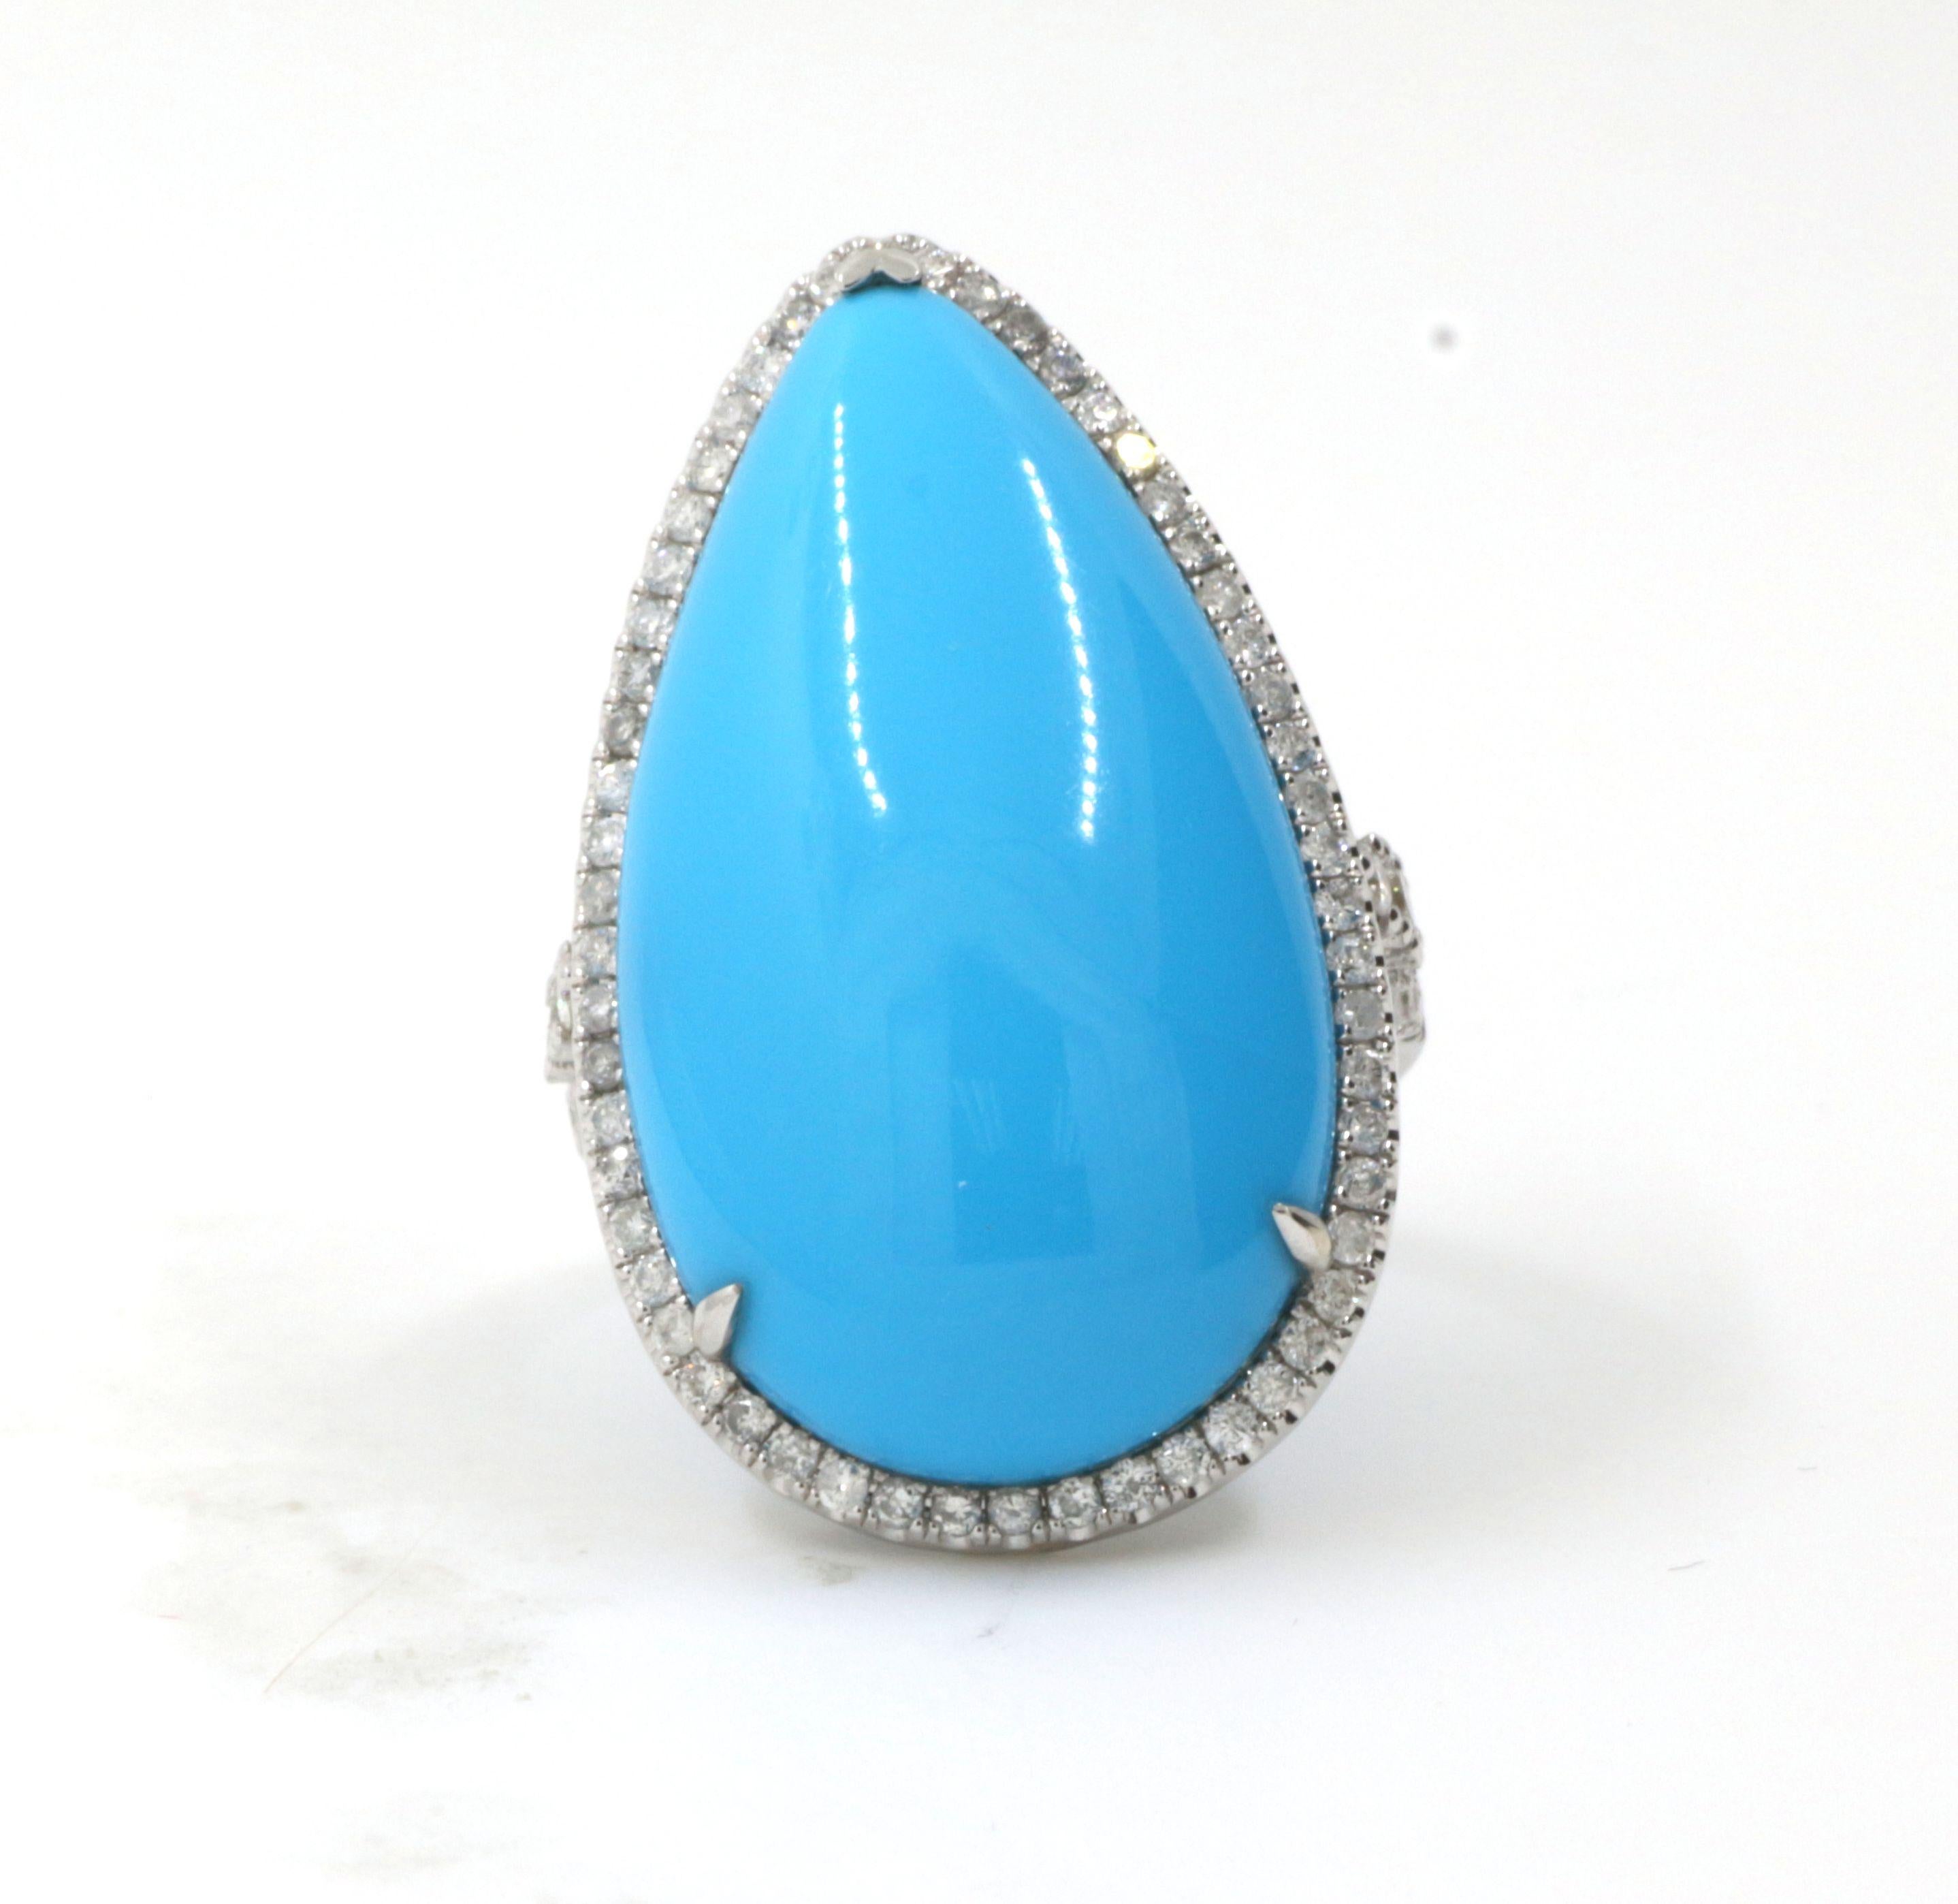 Pear Cut 28.22 Carat Turquoise Diamond Ring in 18 Karat White Gold